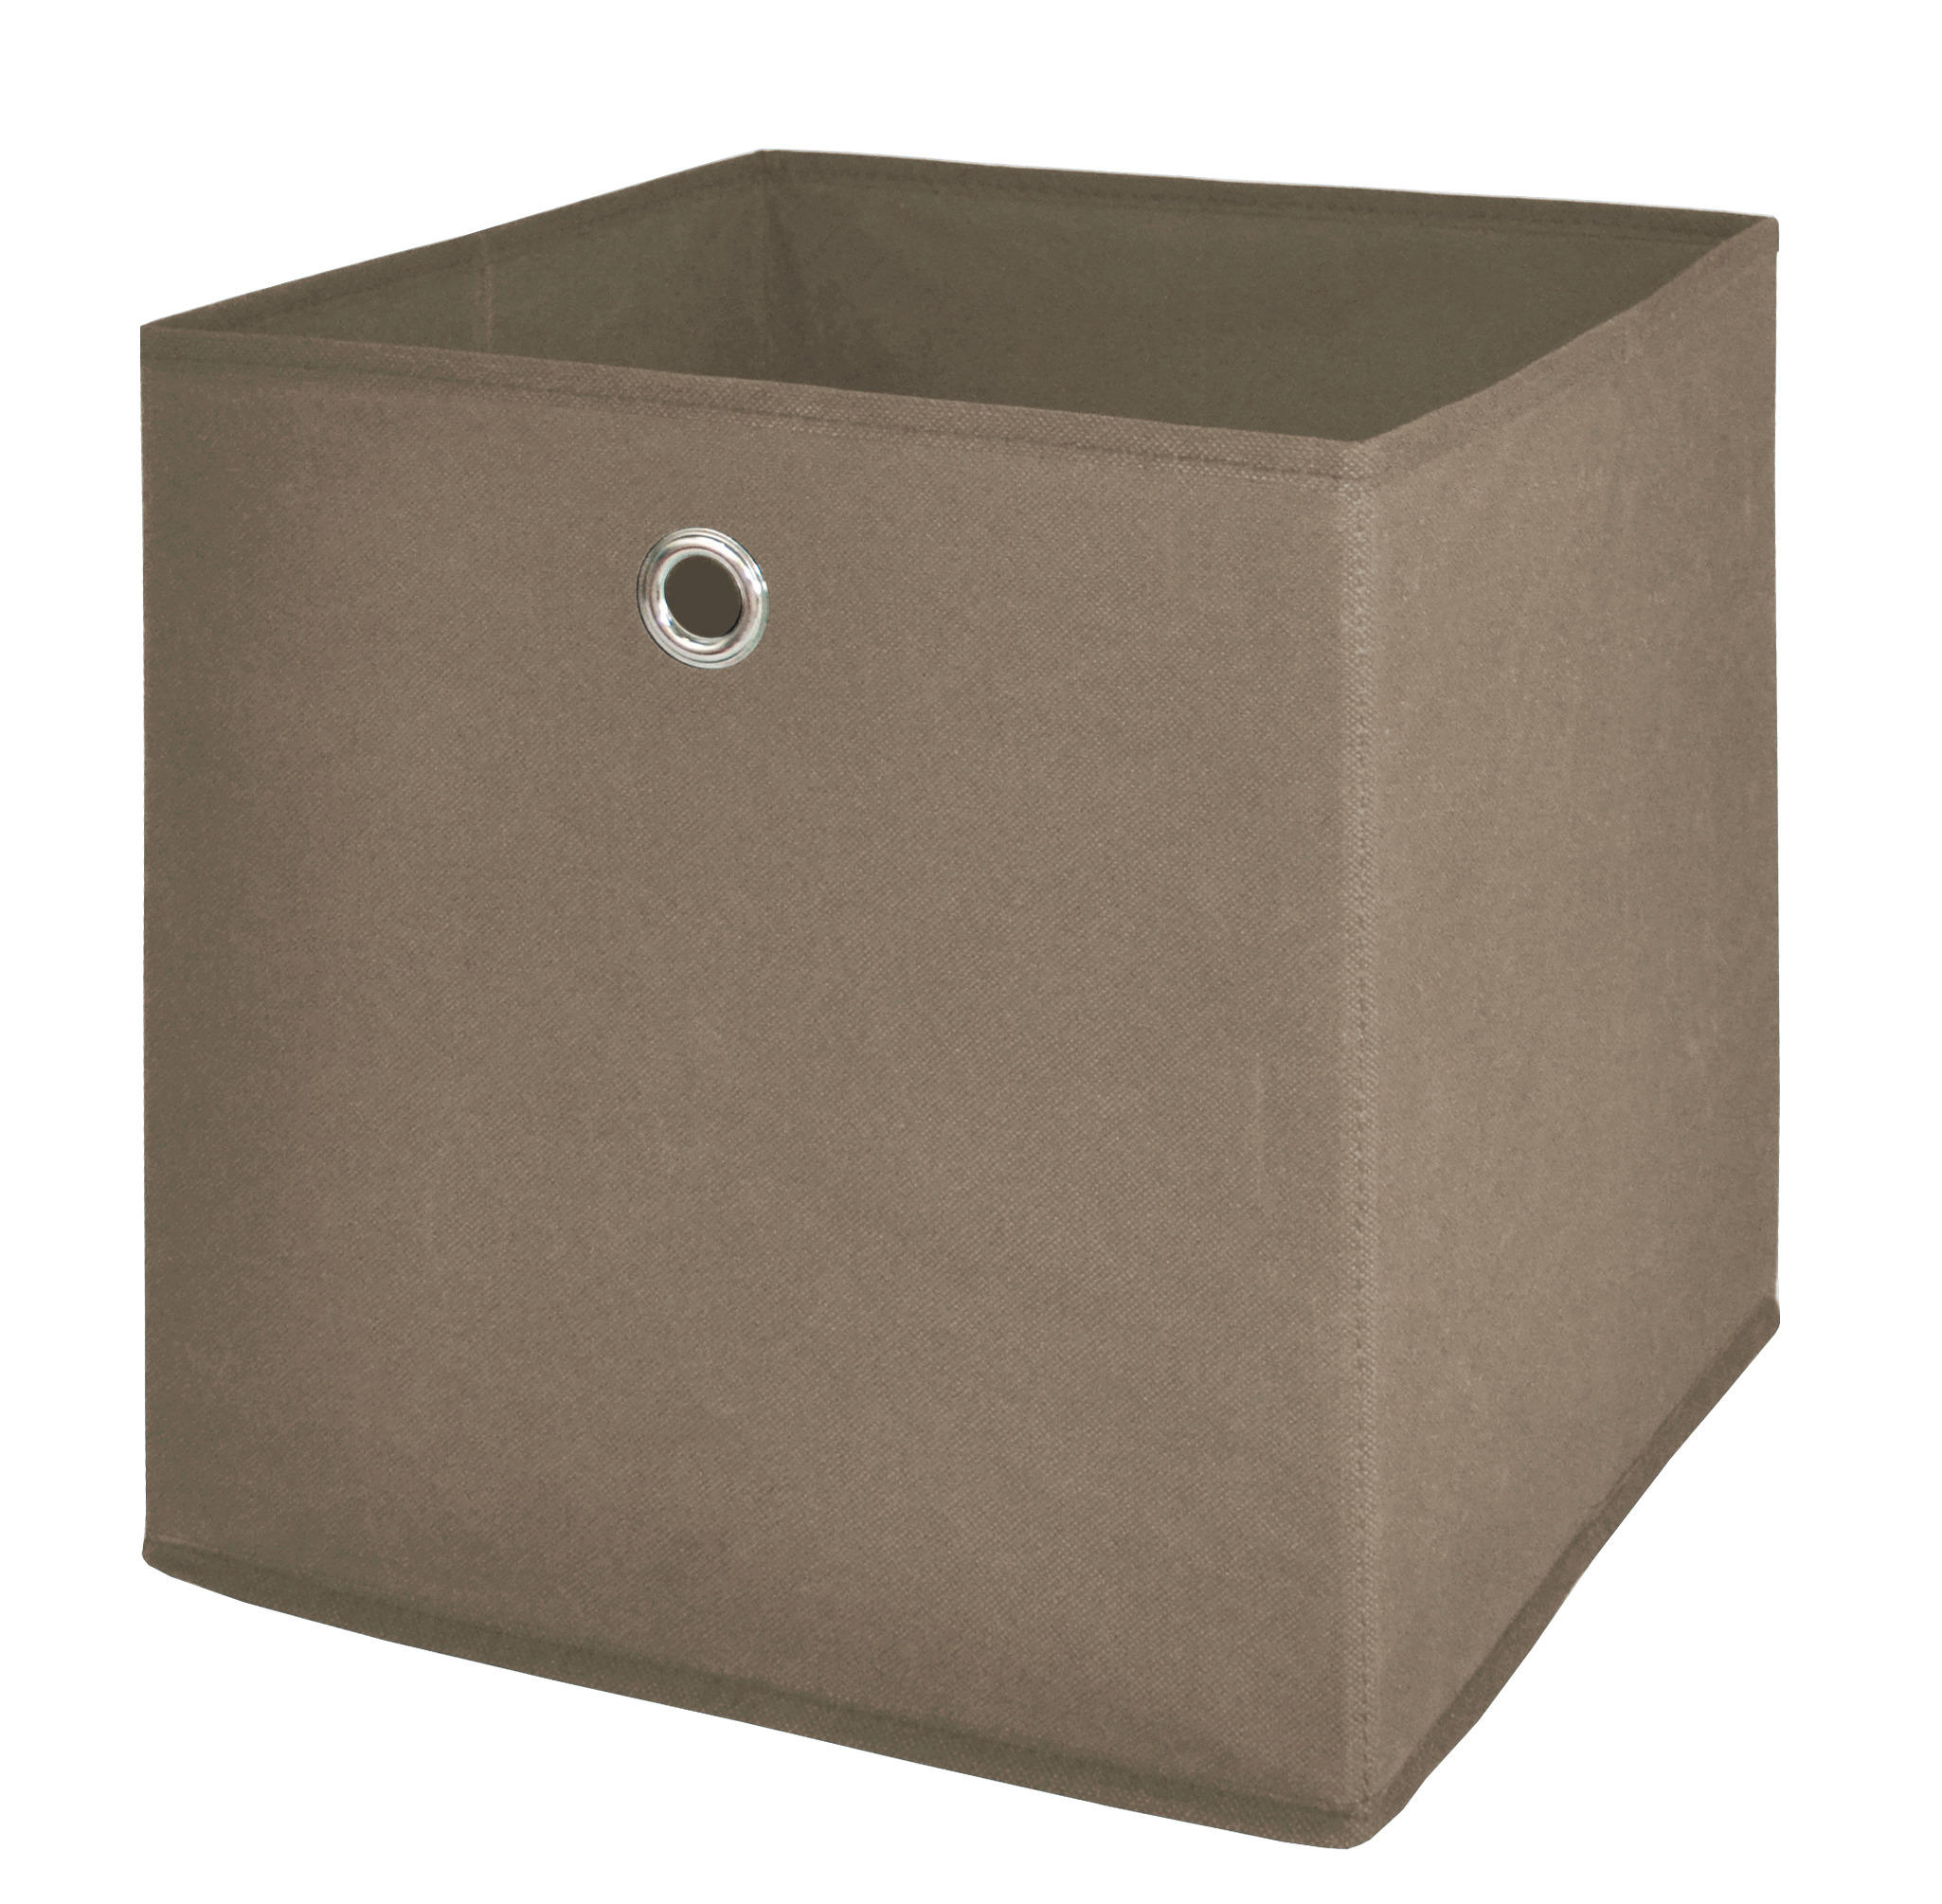 Stoffbox grau B/H/T: ca. 32x32x32 cm Stoffbox_1 - grau (32,00/32,00/32,00cm)